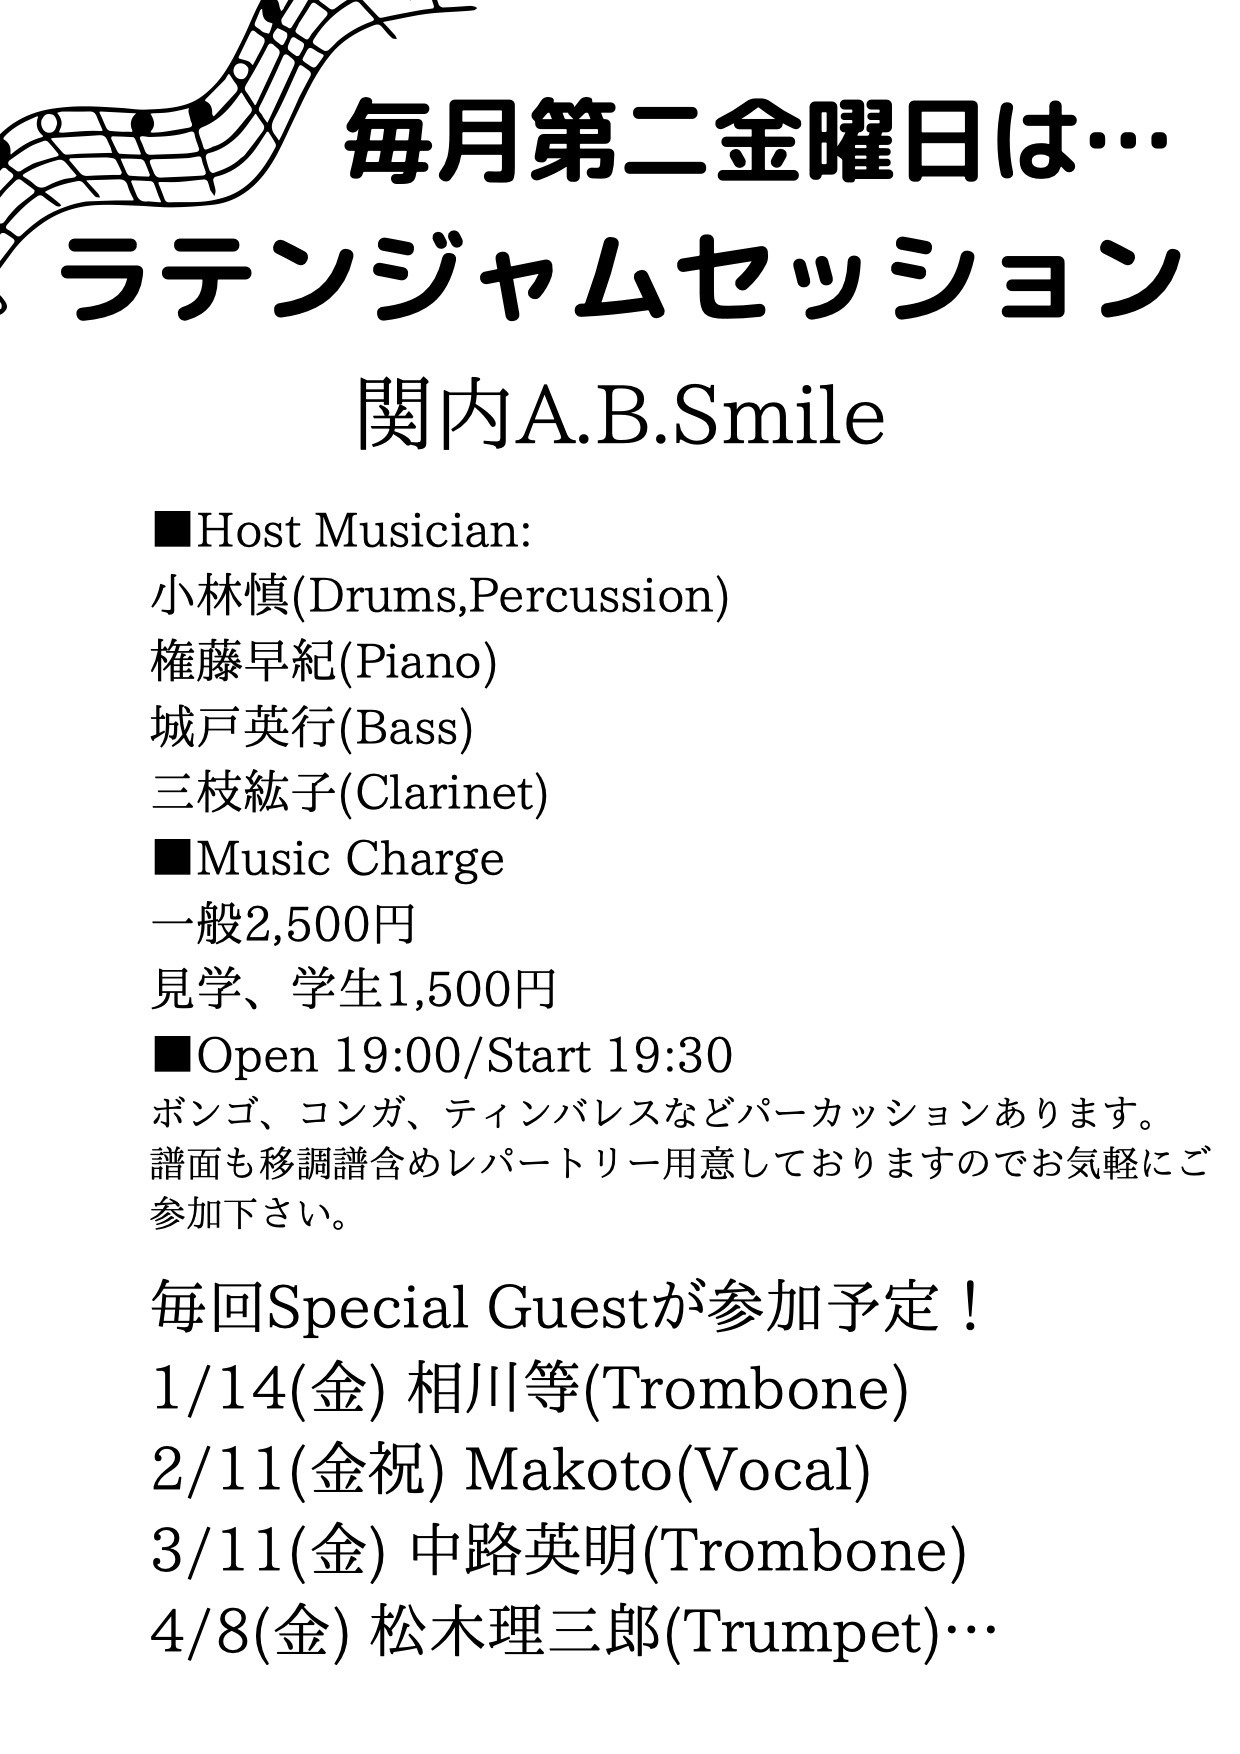 2022/1/14(金)「Latin Jam Session」 @ 関内A.B.Smile